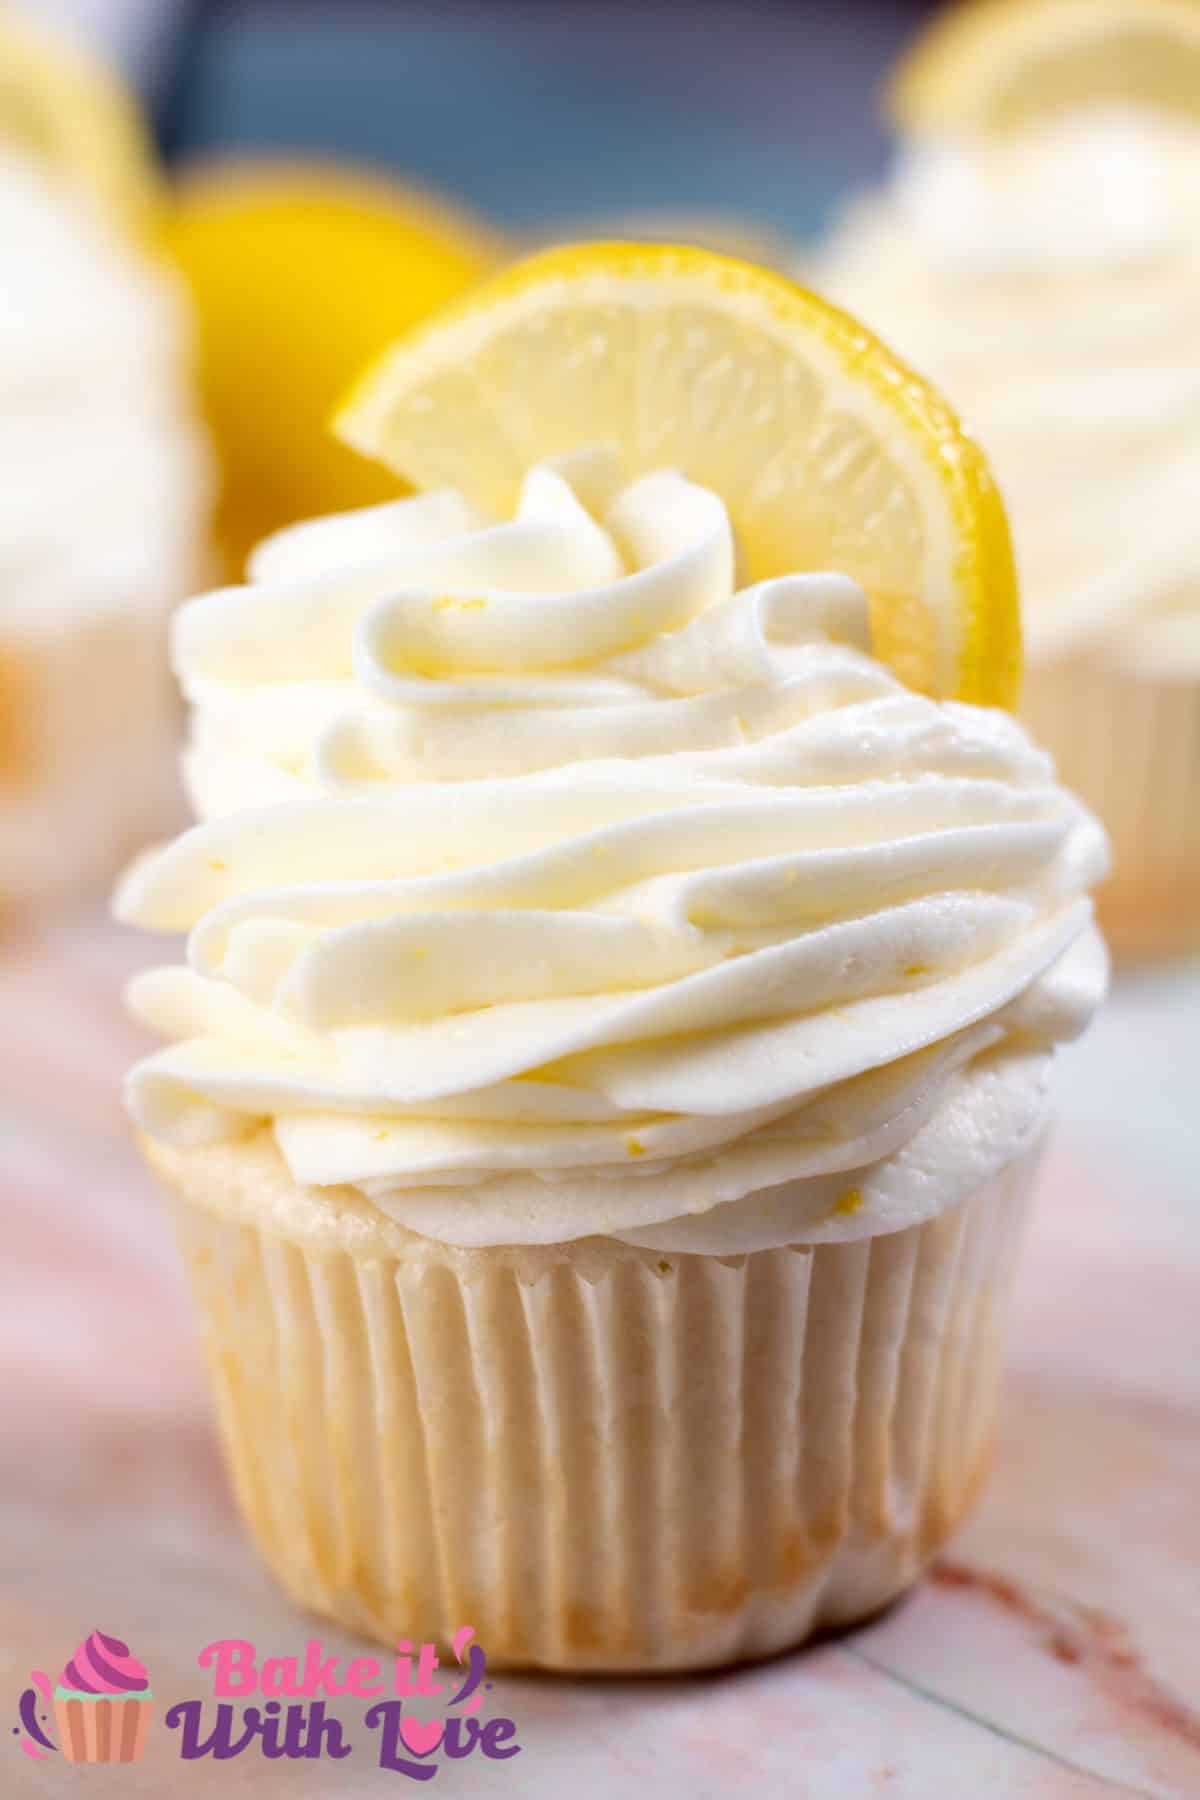 Високо изображение на чаша торта с глазура с лимоново крема сирене.